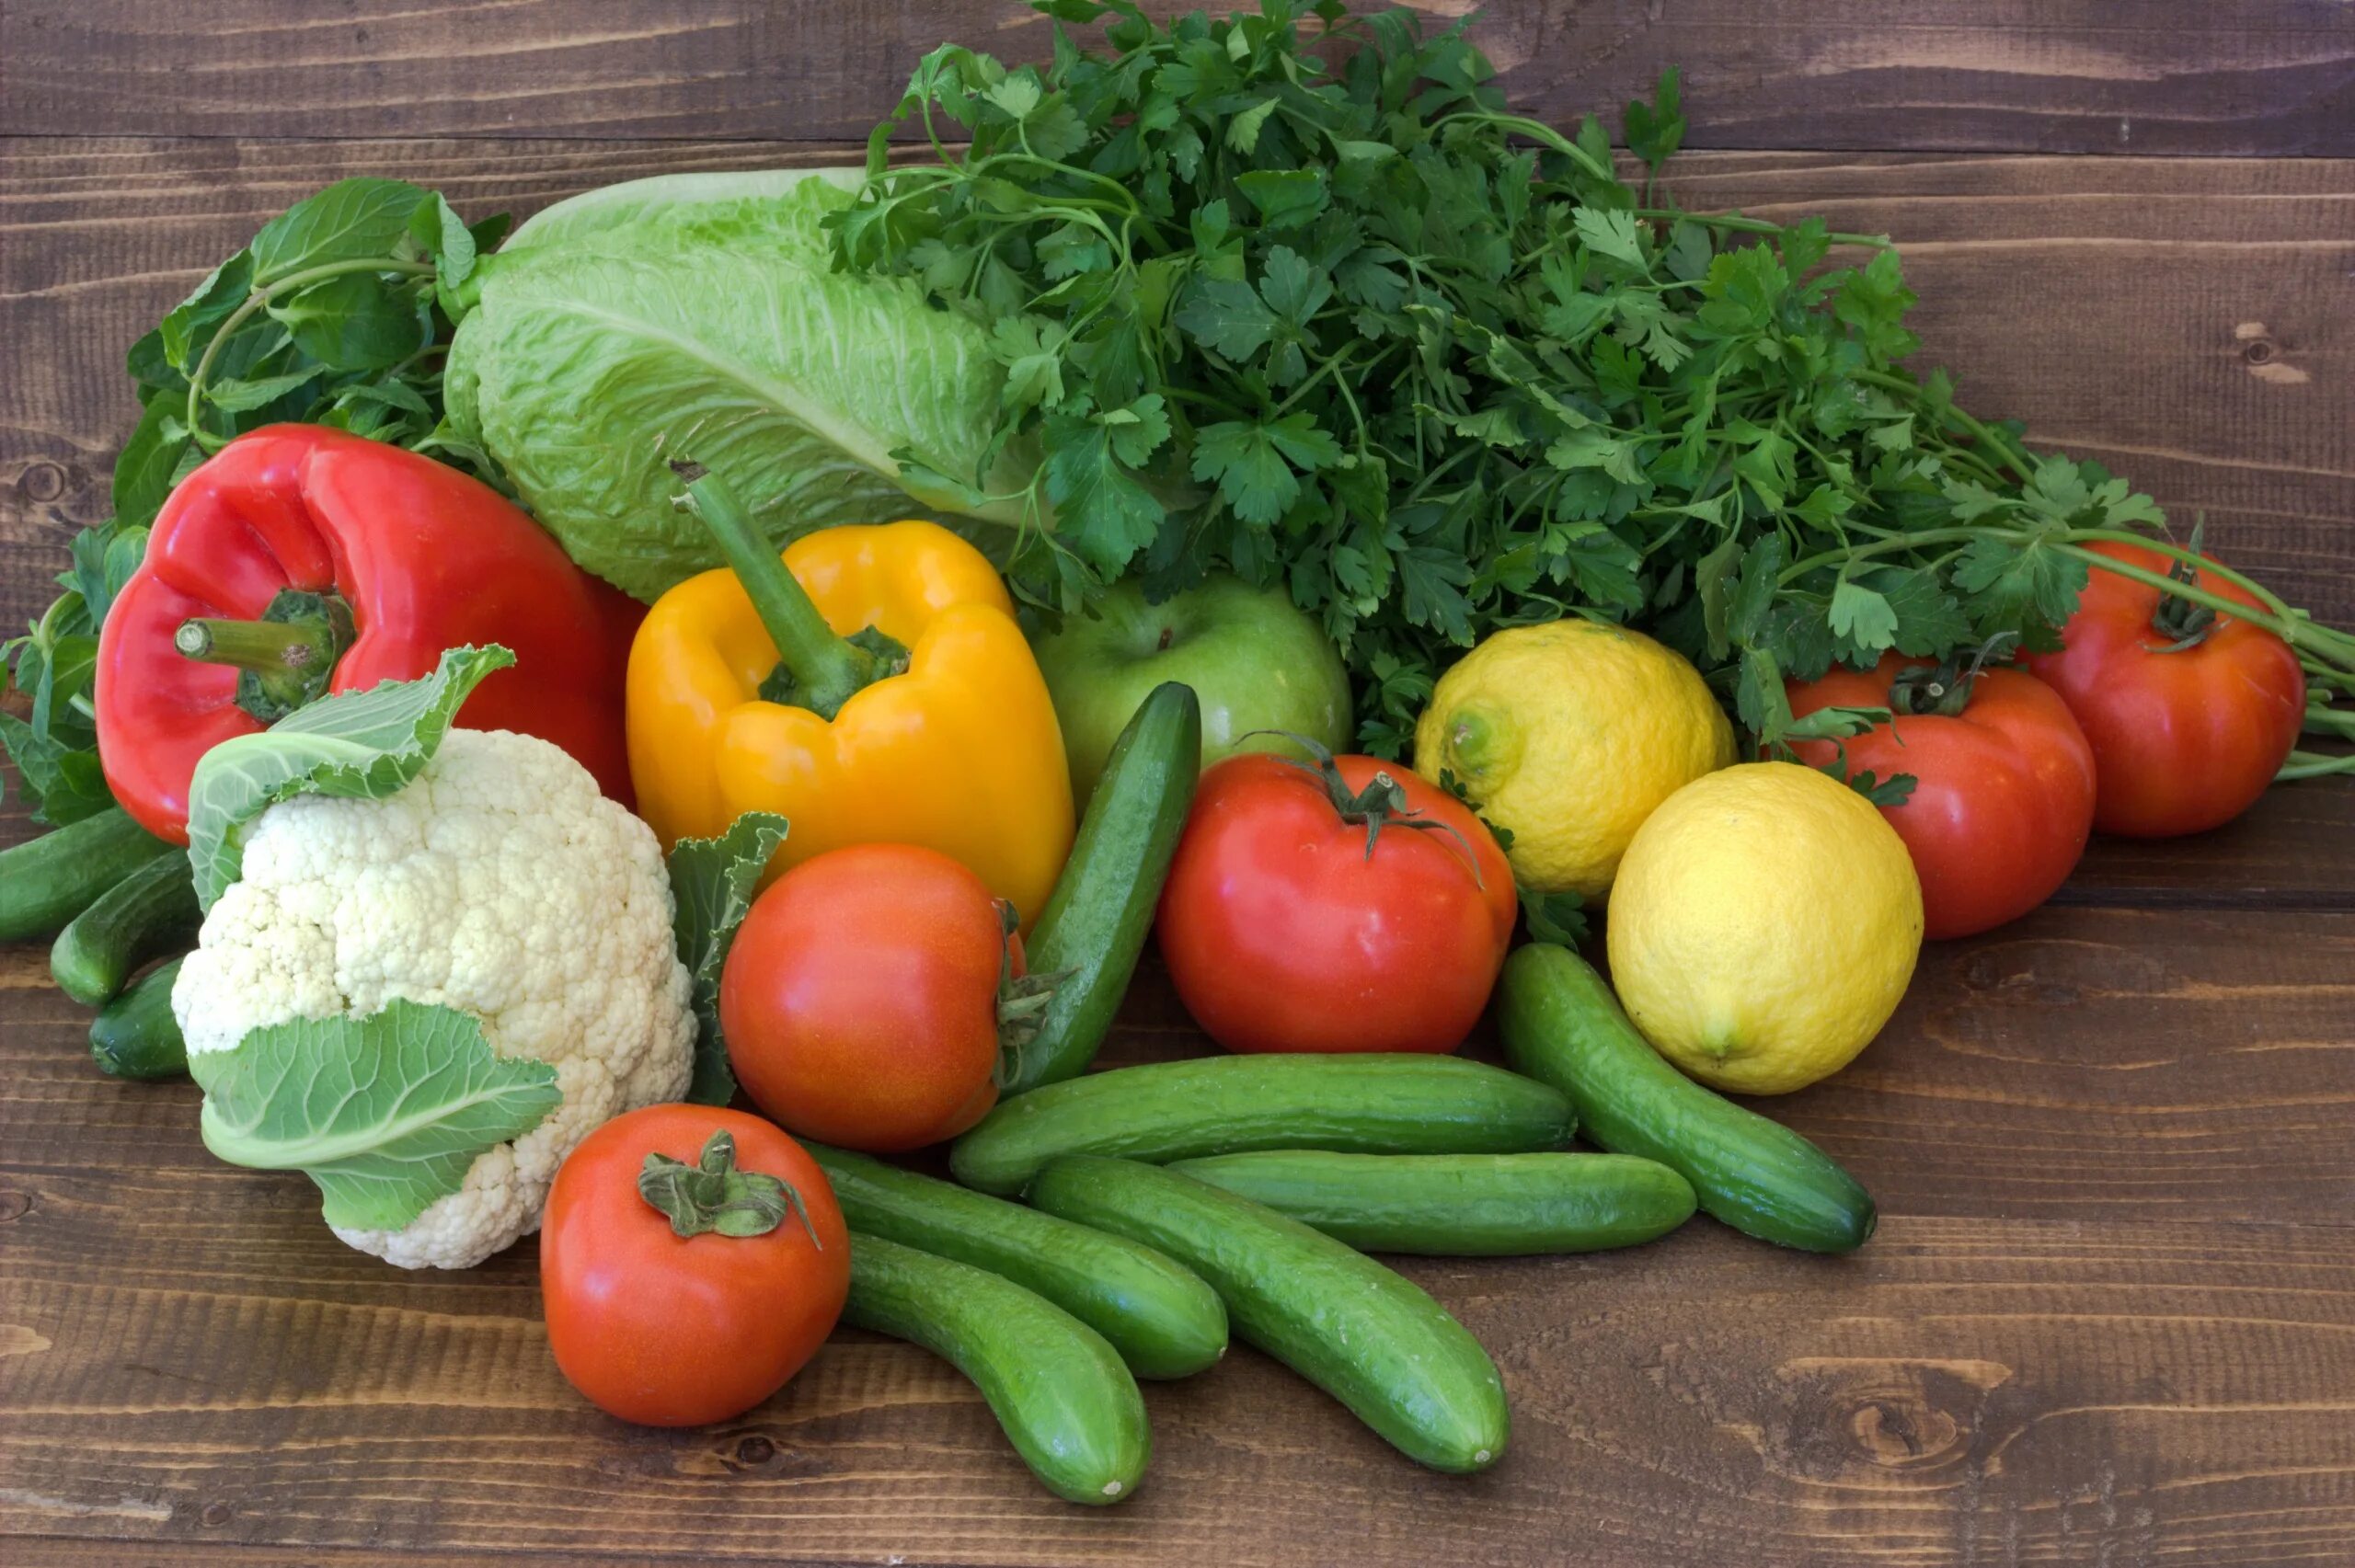 Vegetables and cucumber. Овощи. Свежие овощи и зелень. Овощи и фрукты. Овощи для щей.